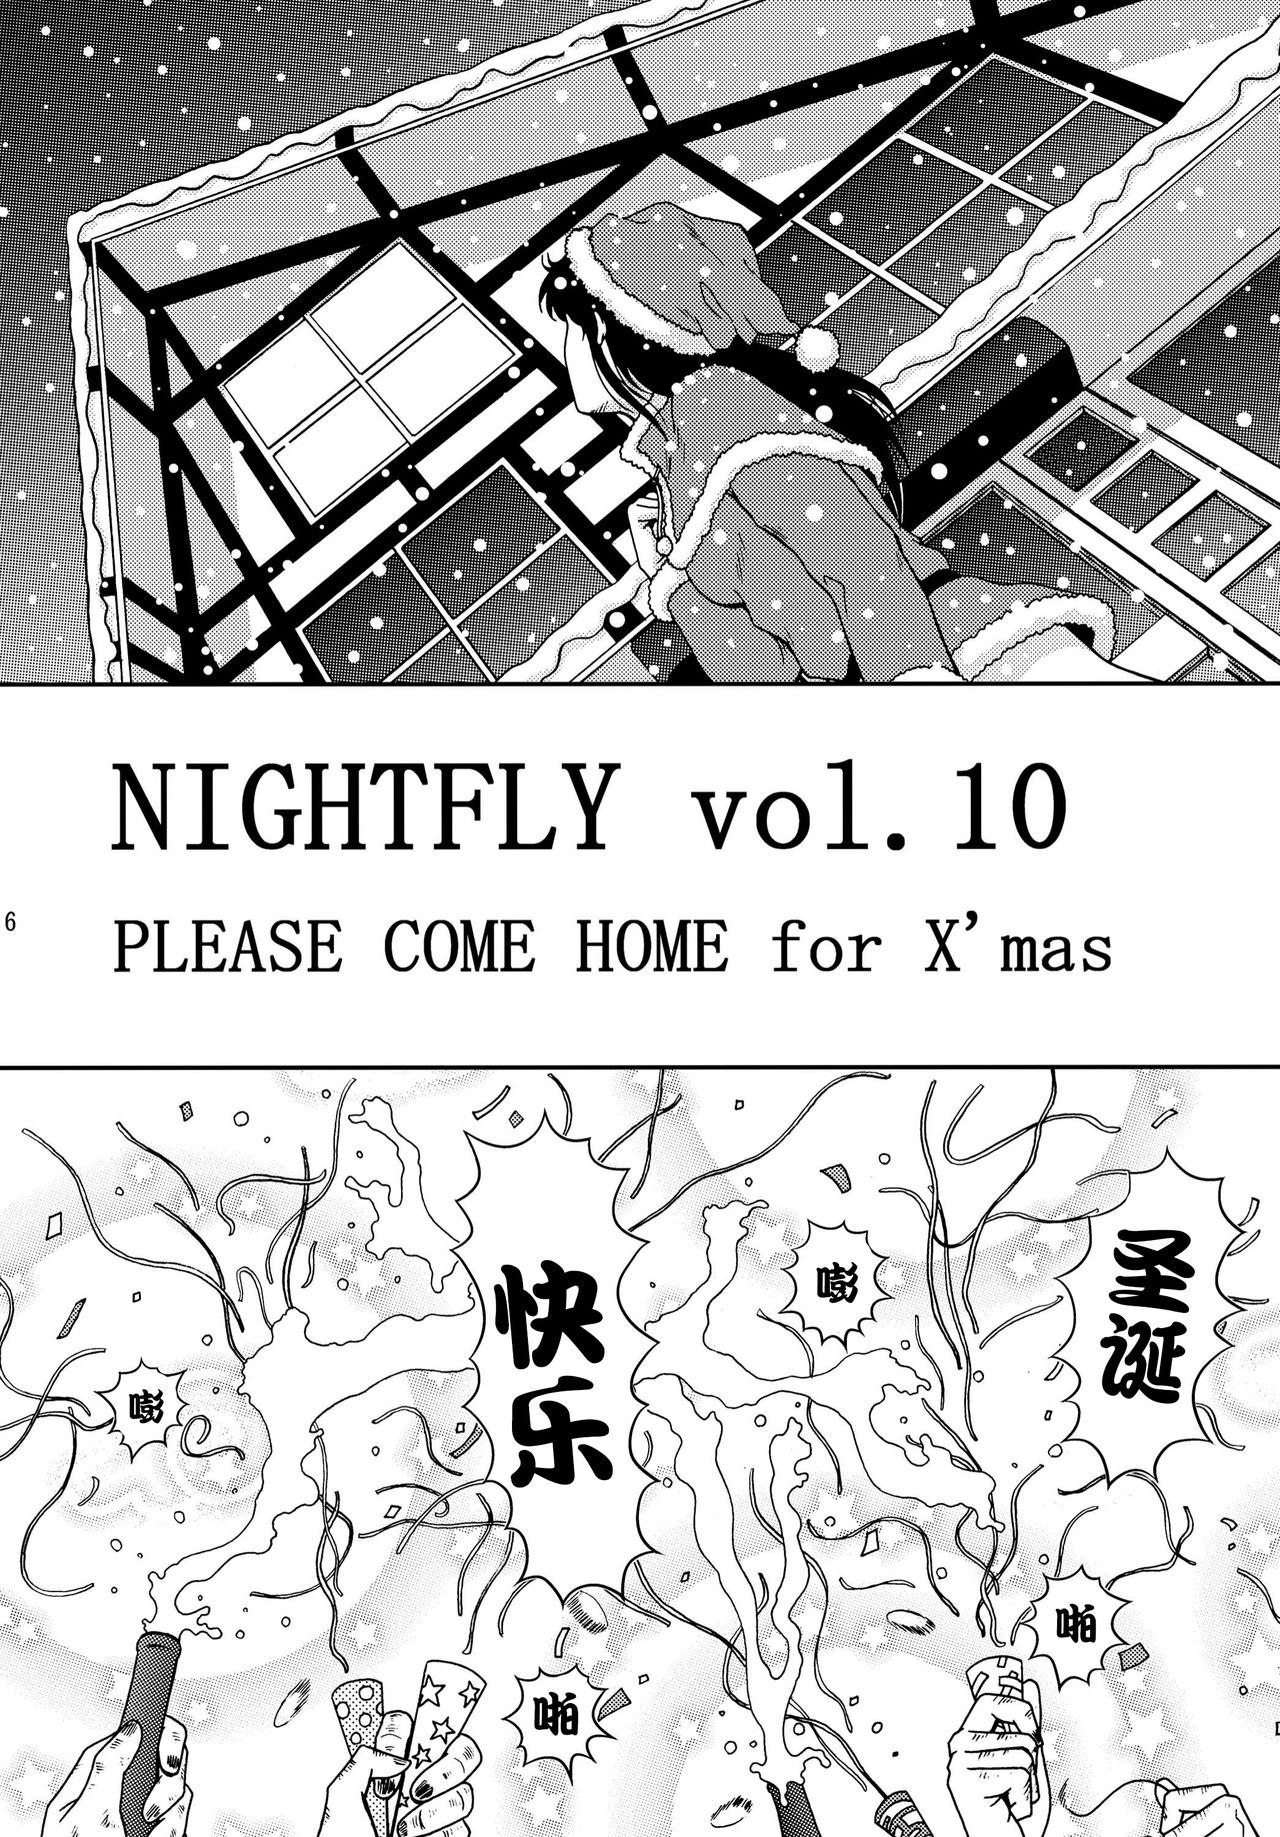 NIGHTFLY vol.10 X＆＃x27; masのために家に帰ってください